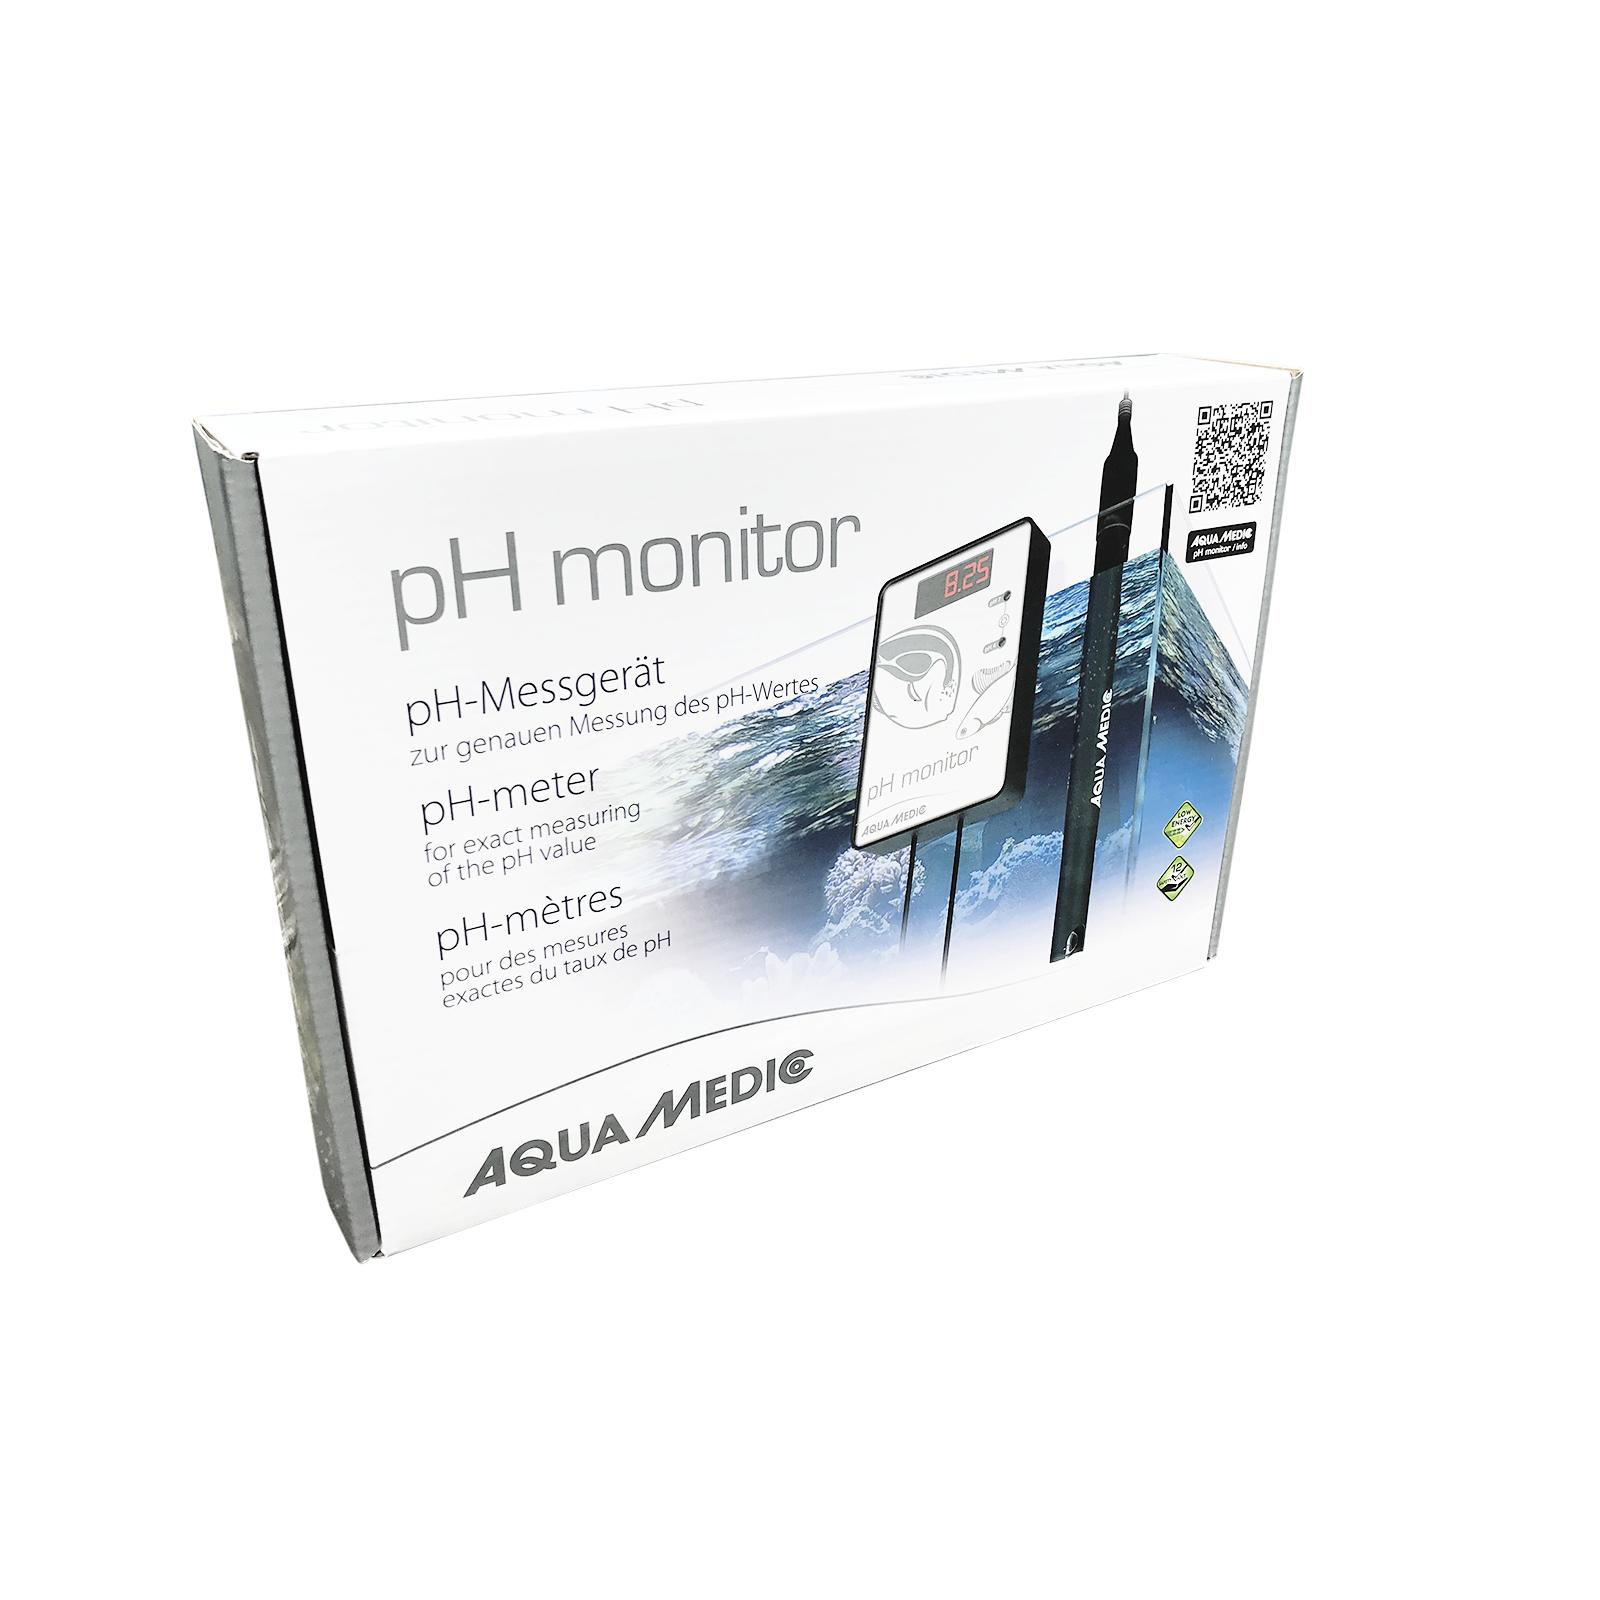 Aqua Medic pH monitor  